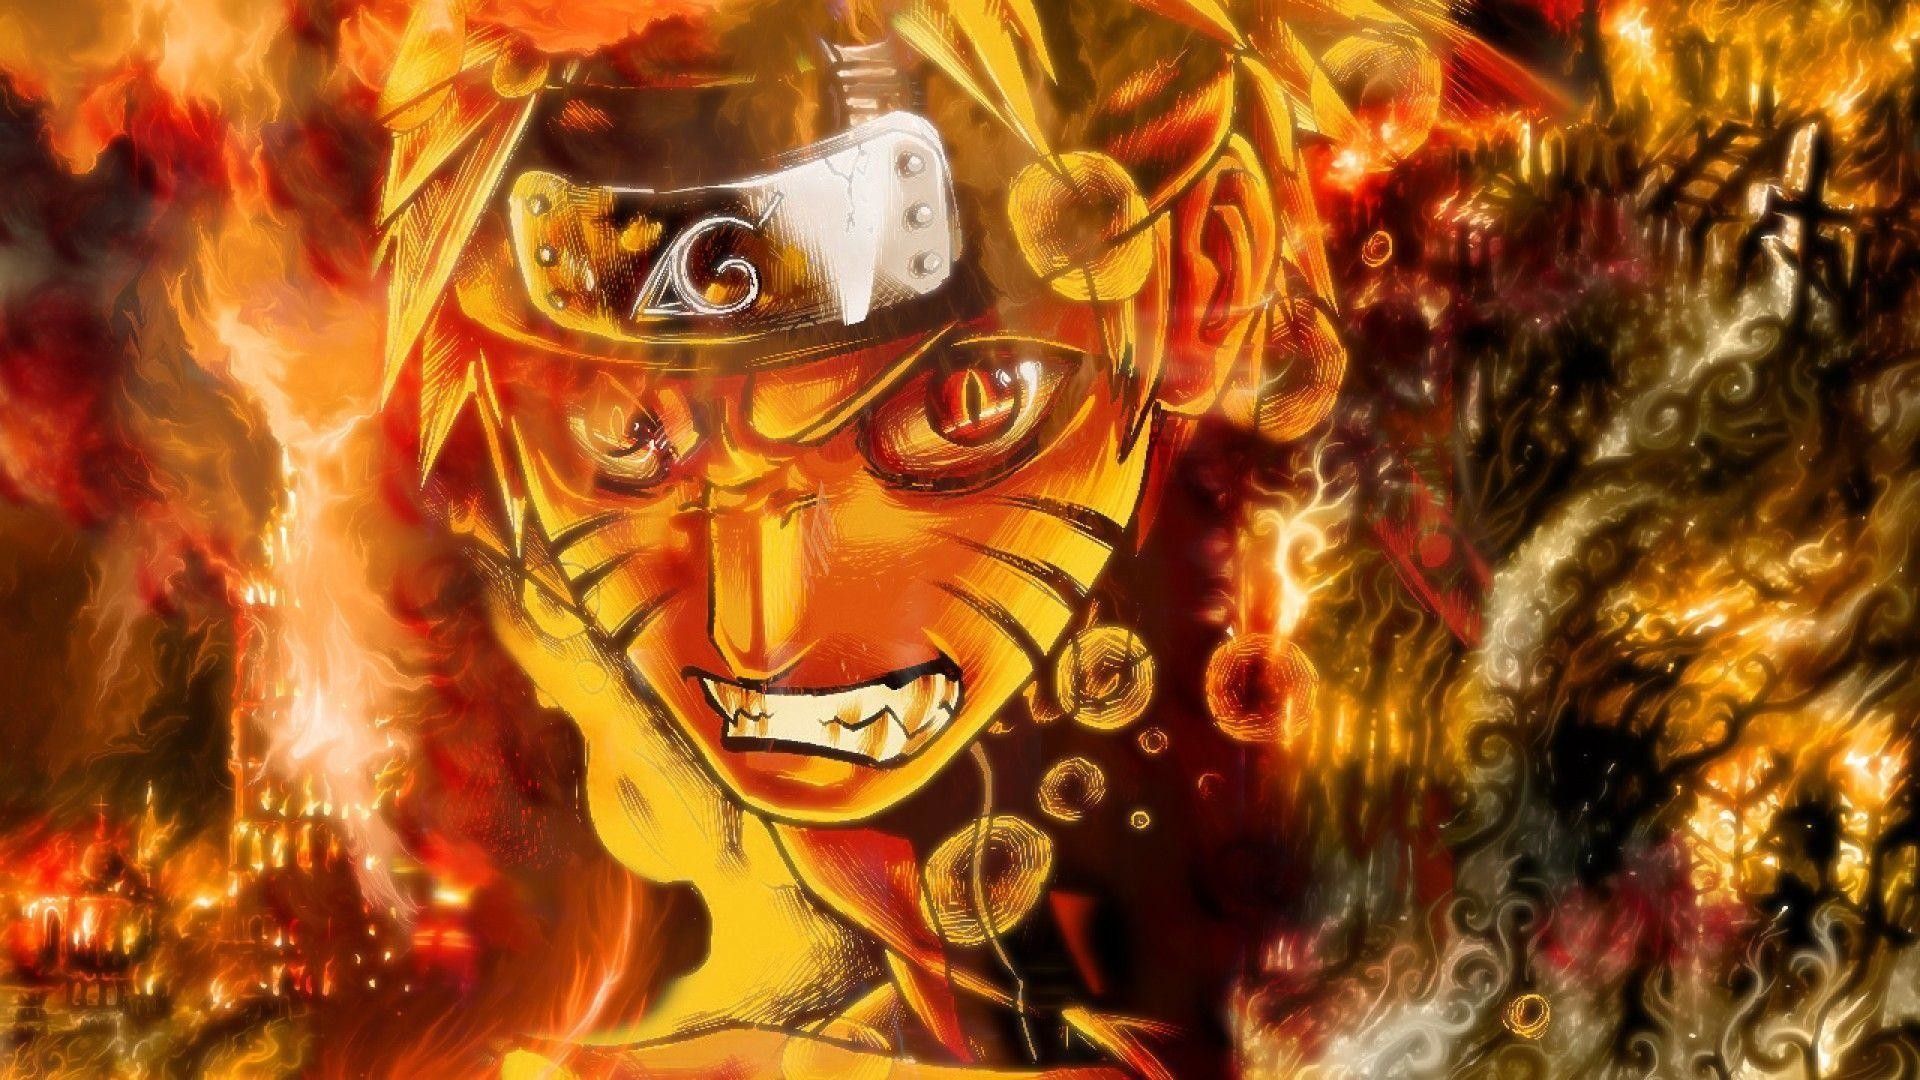 Fonds d’écran Naruto HD - 100 images à télécharger gratuitement